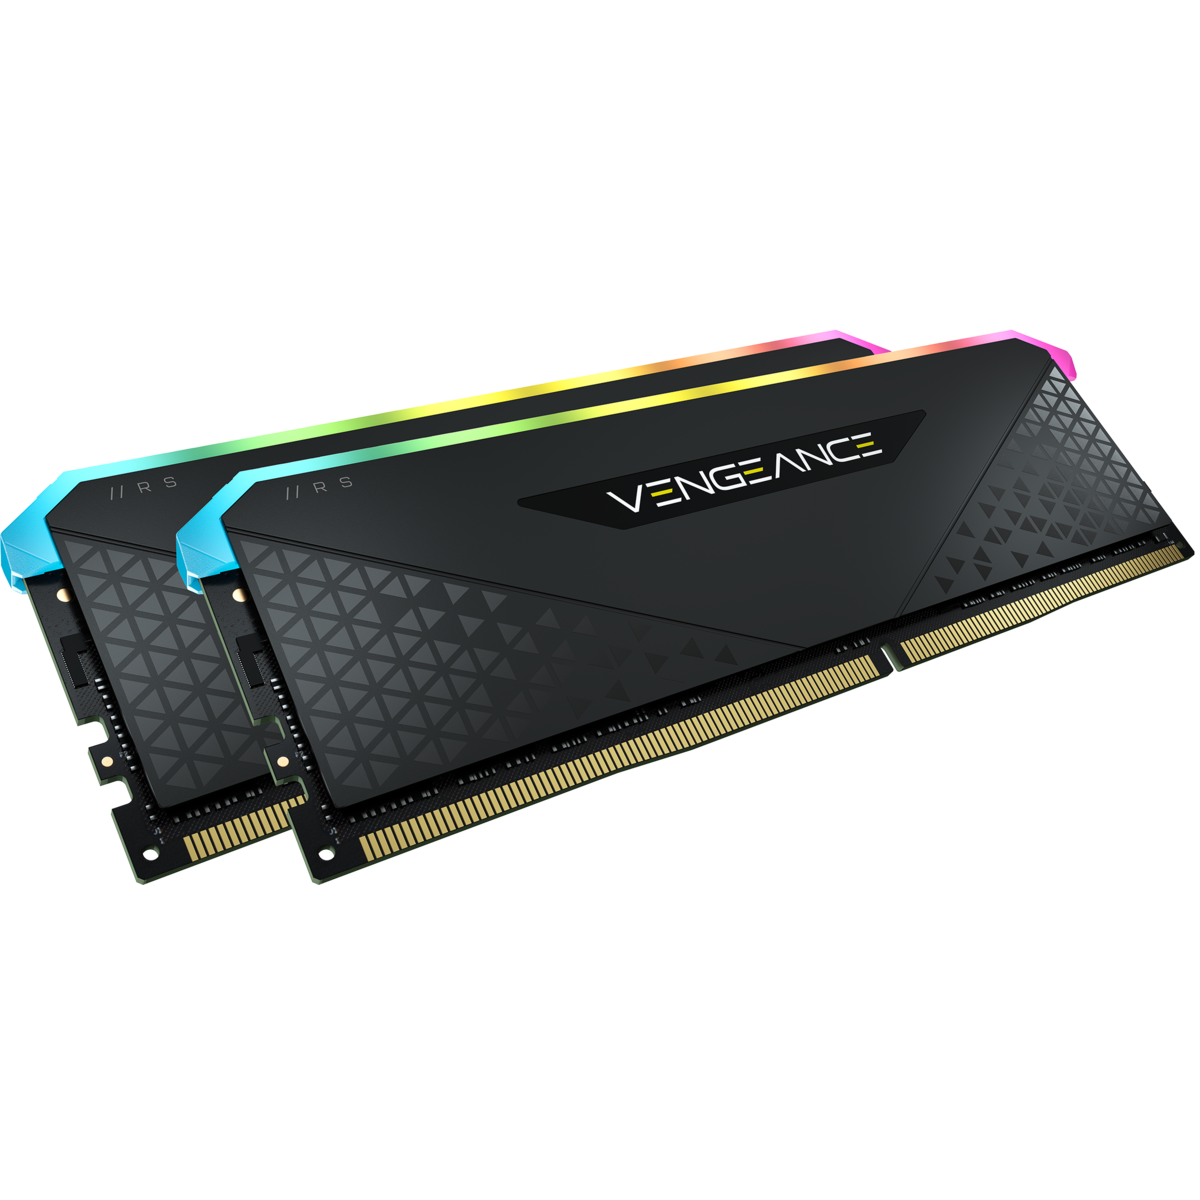 Corsair VENGEANCE RGB RS 32GB (16GB x2) DDR4 3600MHz